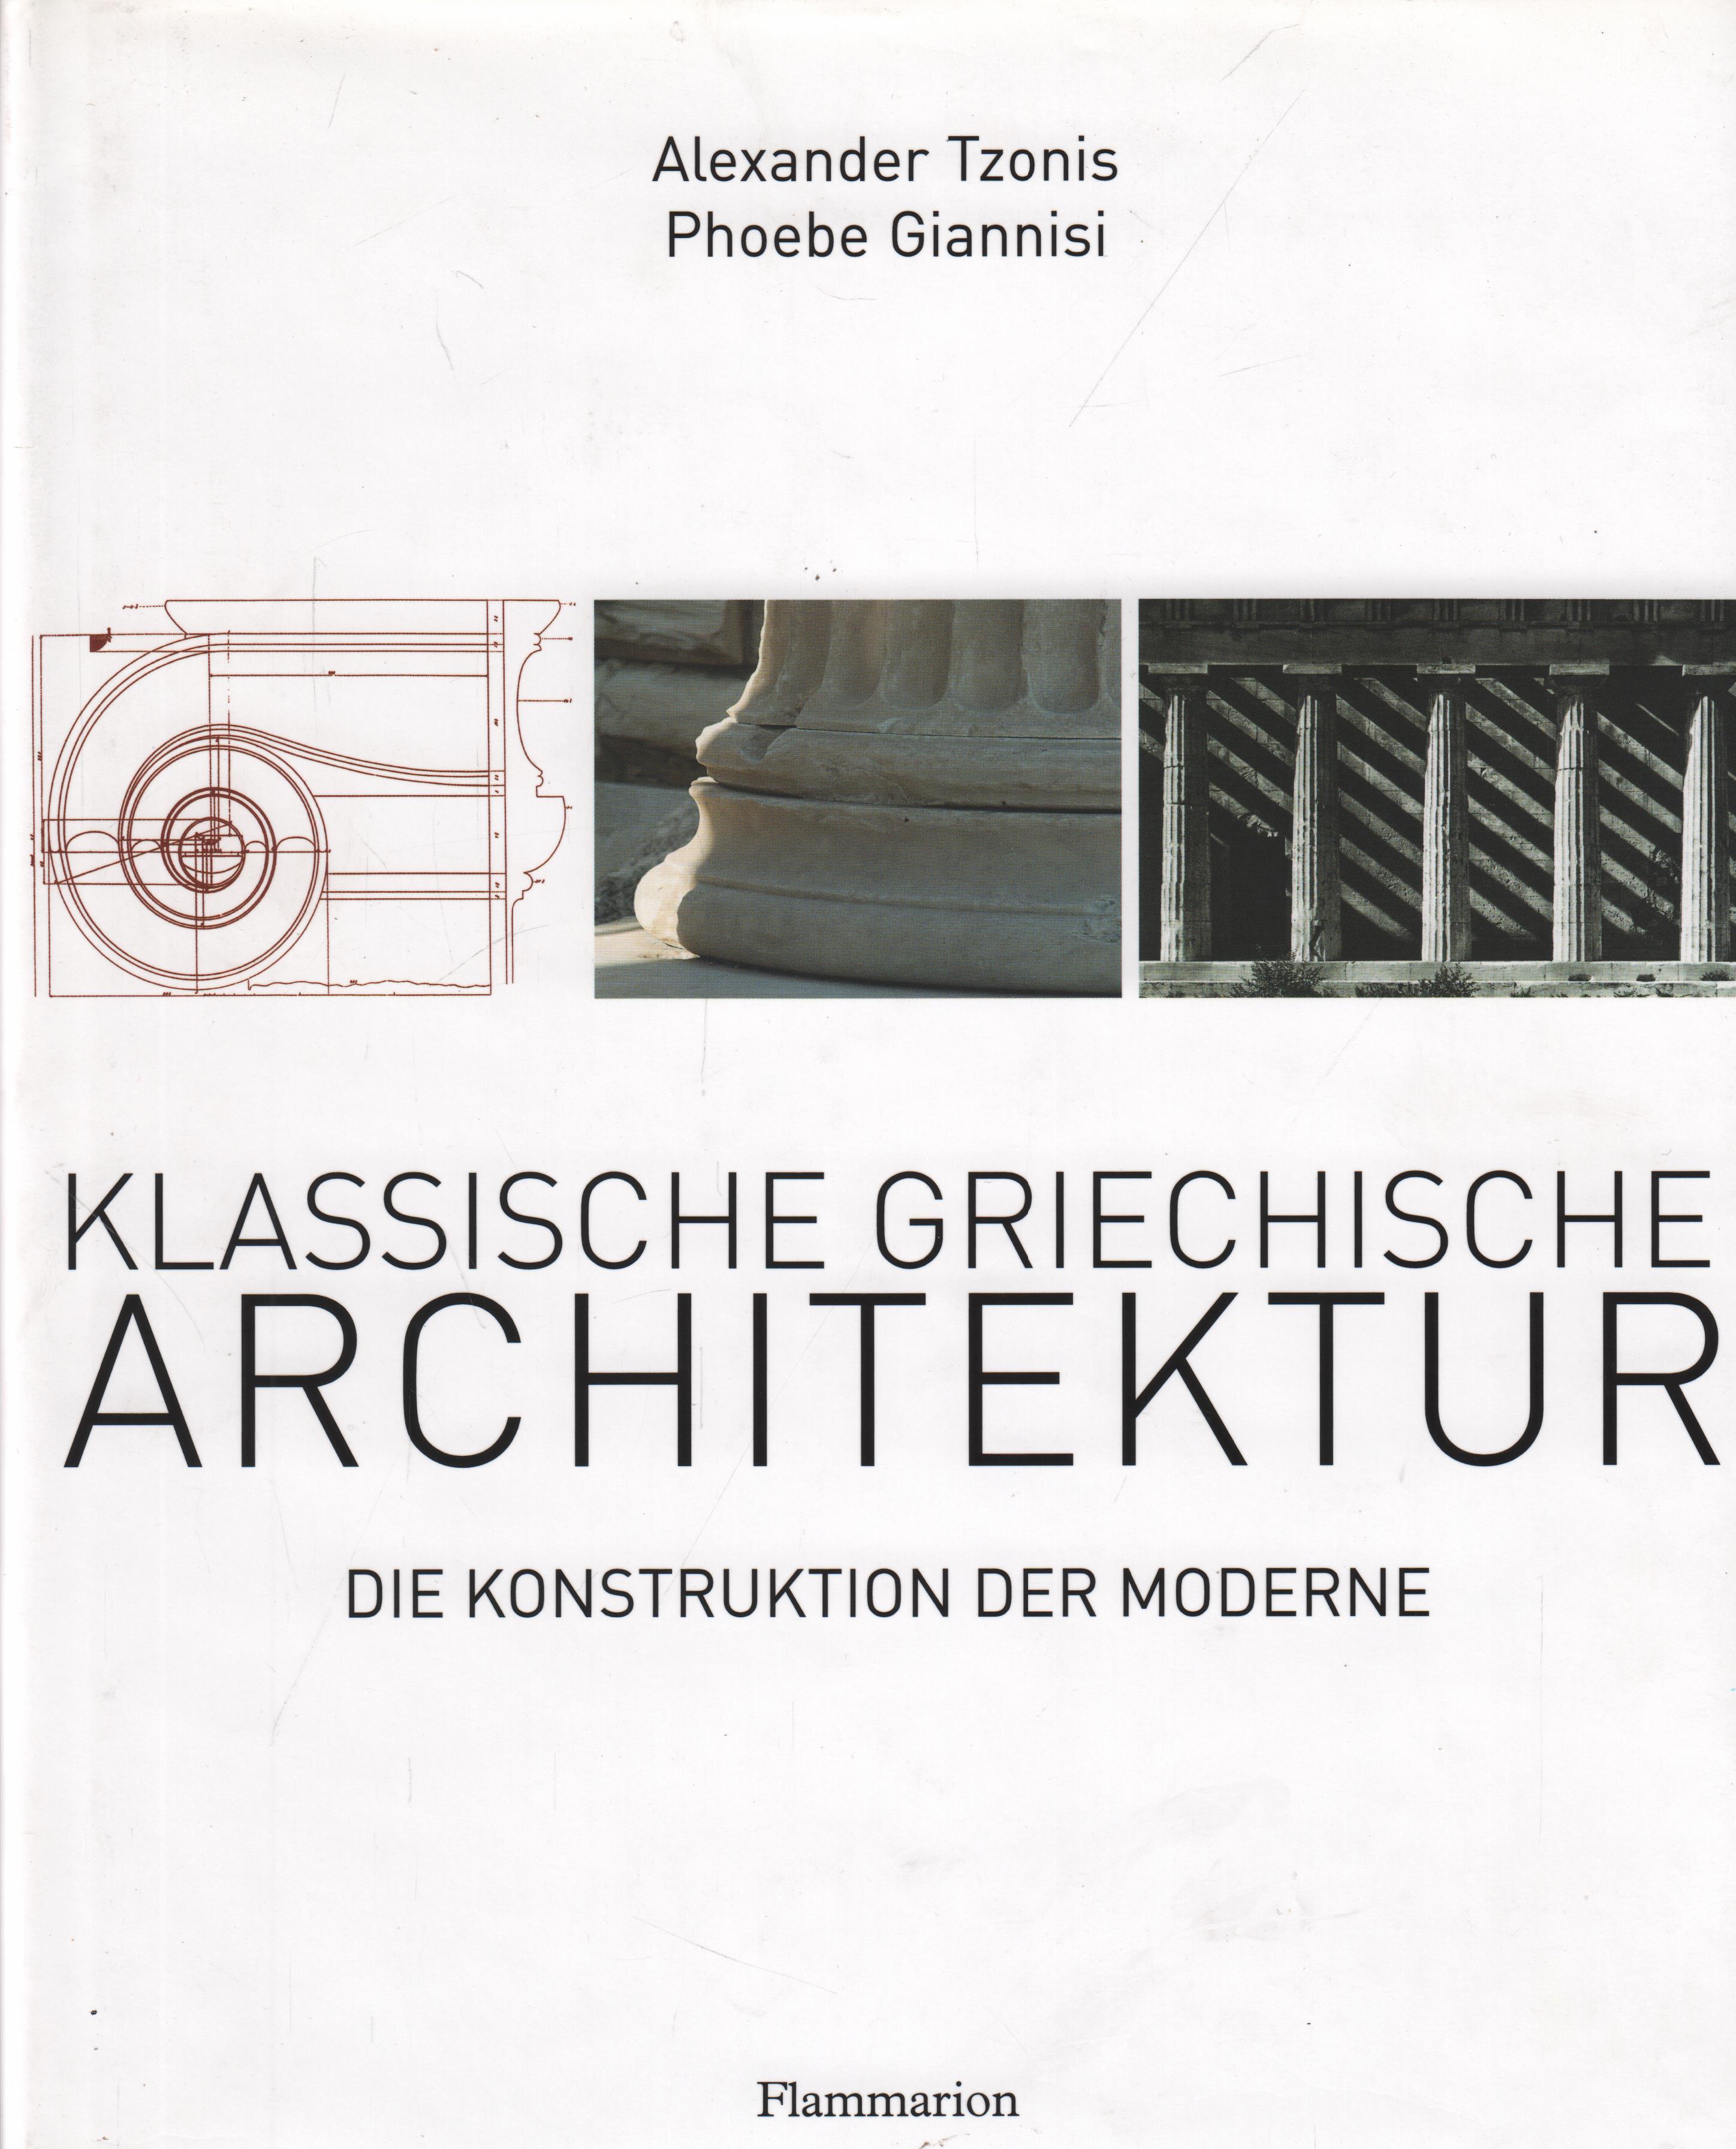 Klassische griechische Architektur Die Konstruktion der Moderne - Tzonis, Alexander und Phoebe Giannisi